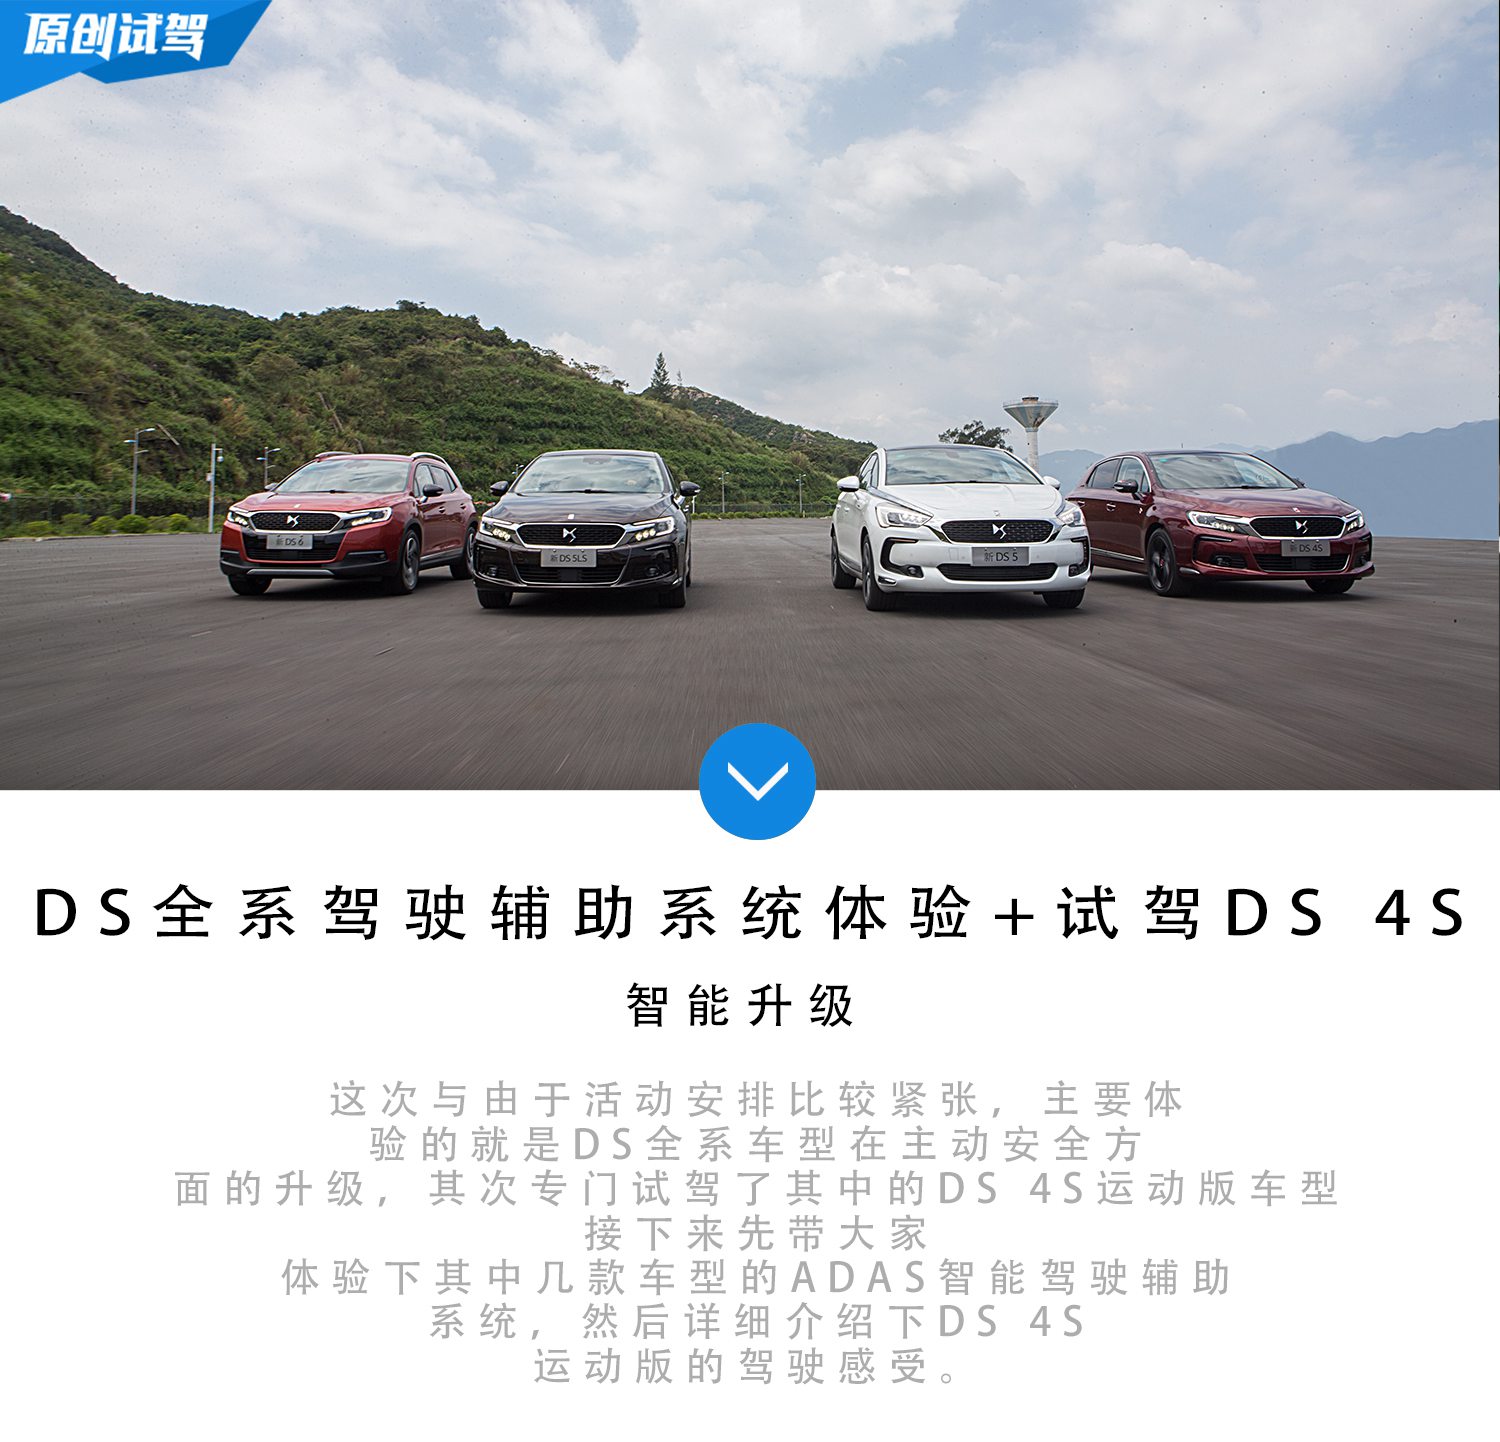 智能升级 DS全系驾驶辅助体验+试驾DS 4S